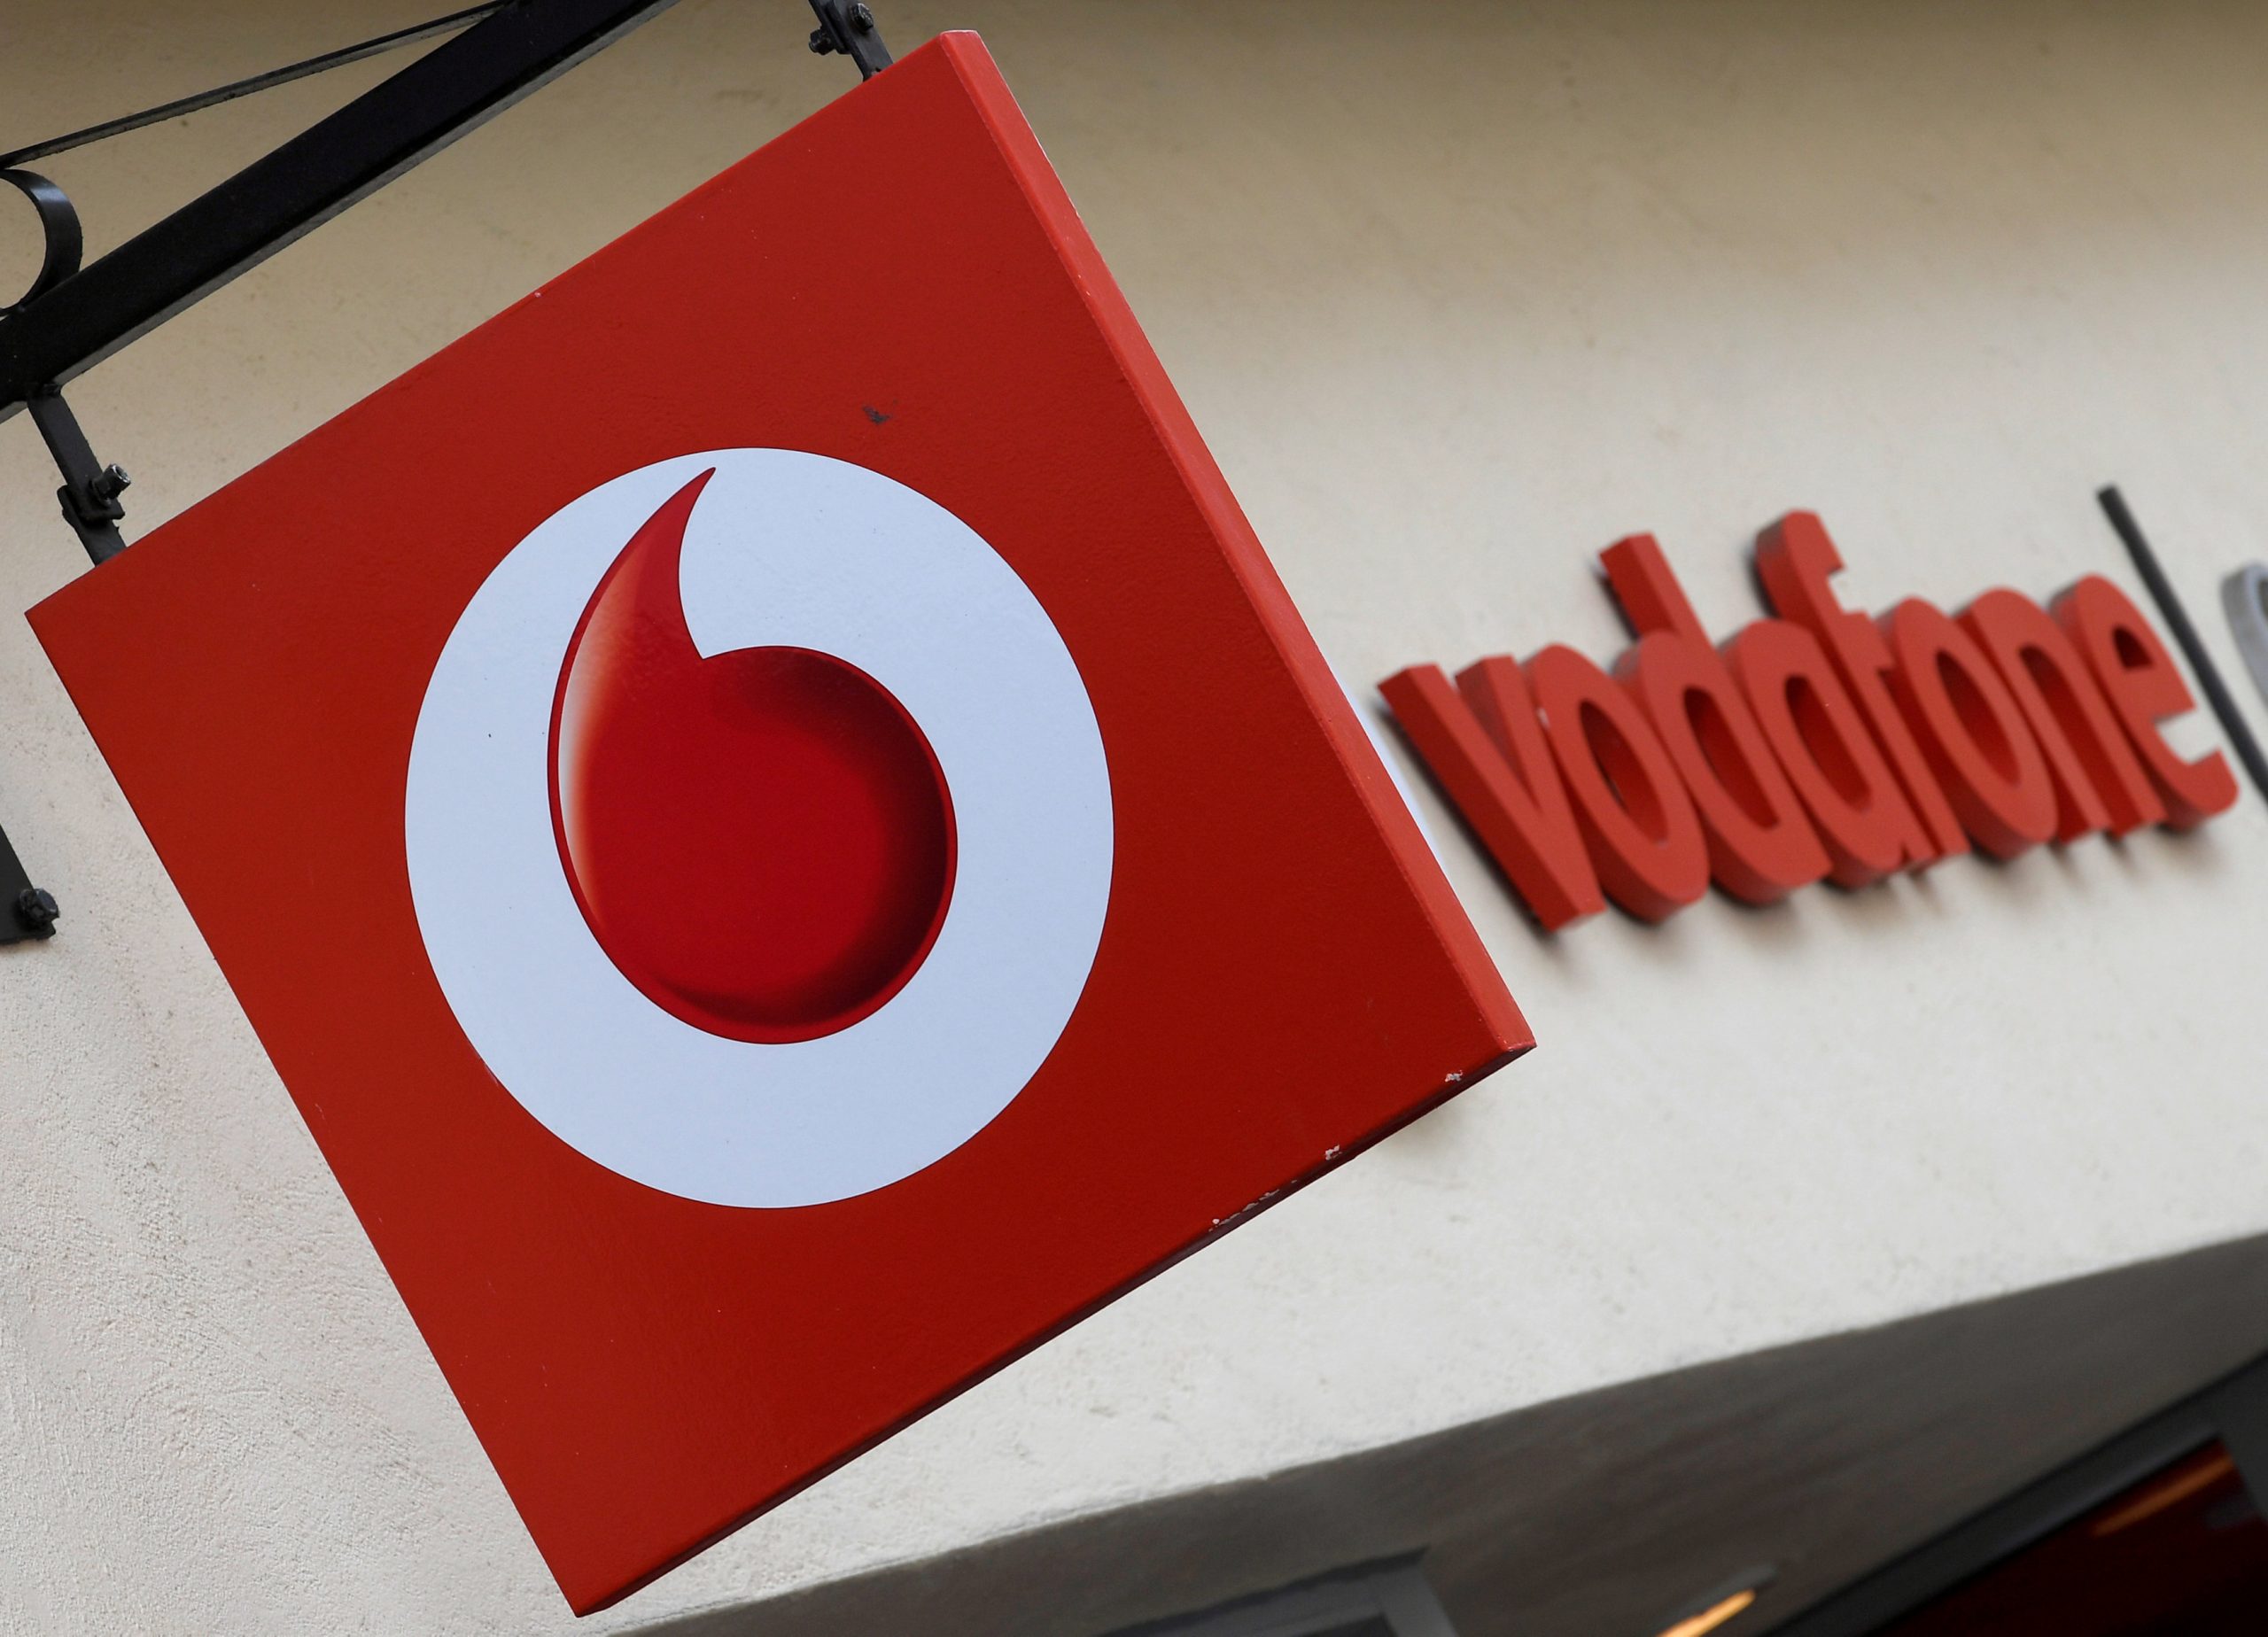 Τηλεπικοινωνίες: Ενώνουν τις δυνάμεις τους Vodafone και Iliad αποκτώντας κυρίαρχη θέση στην ιταλική αγορά